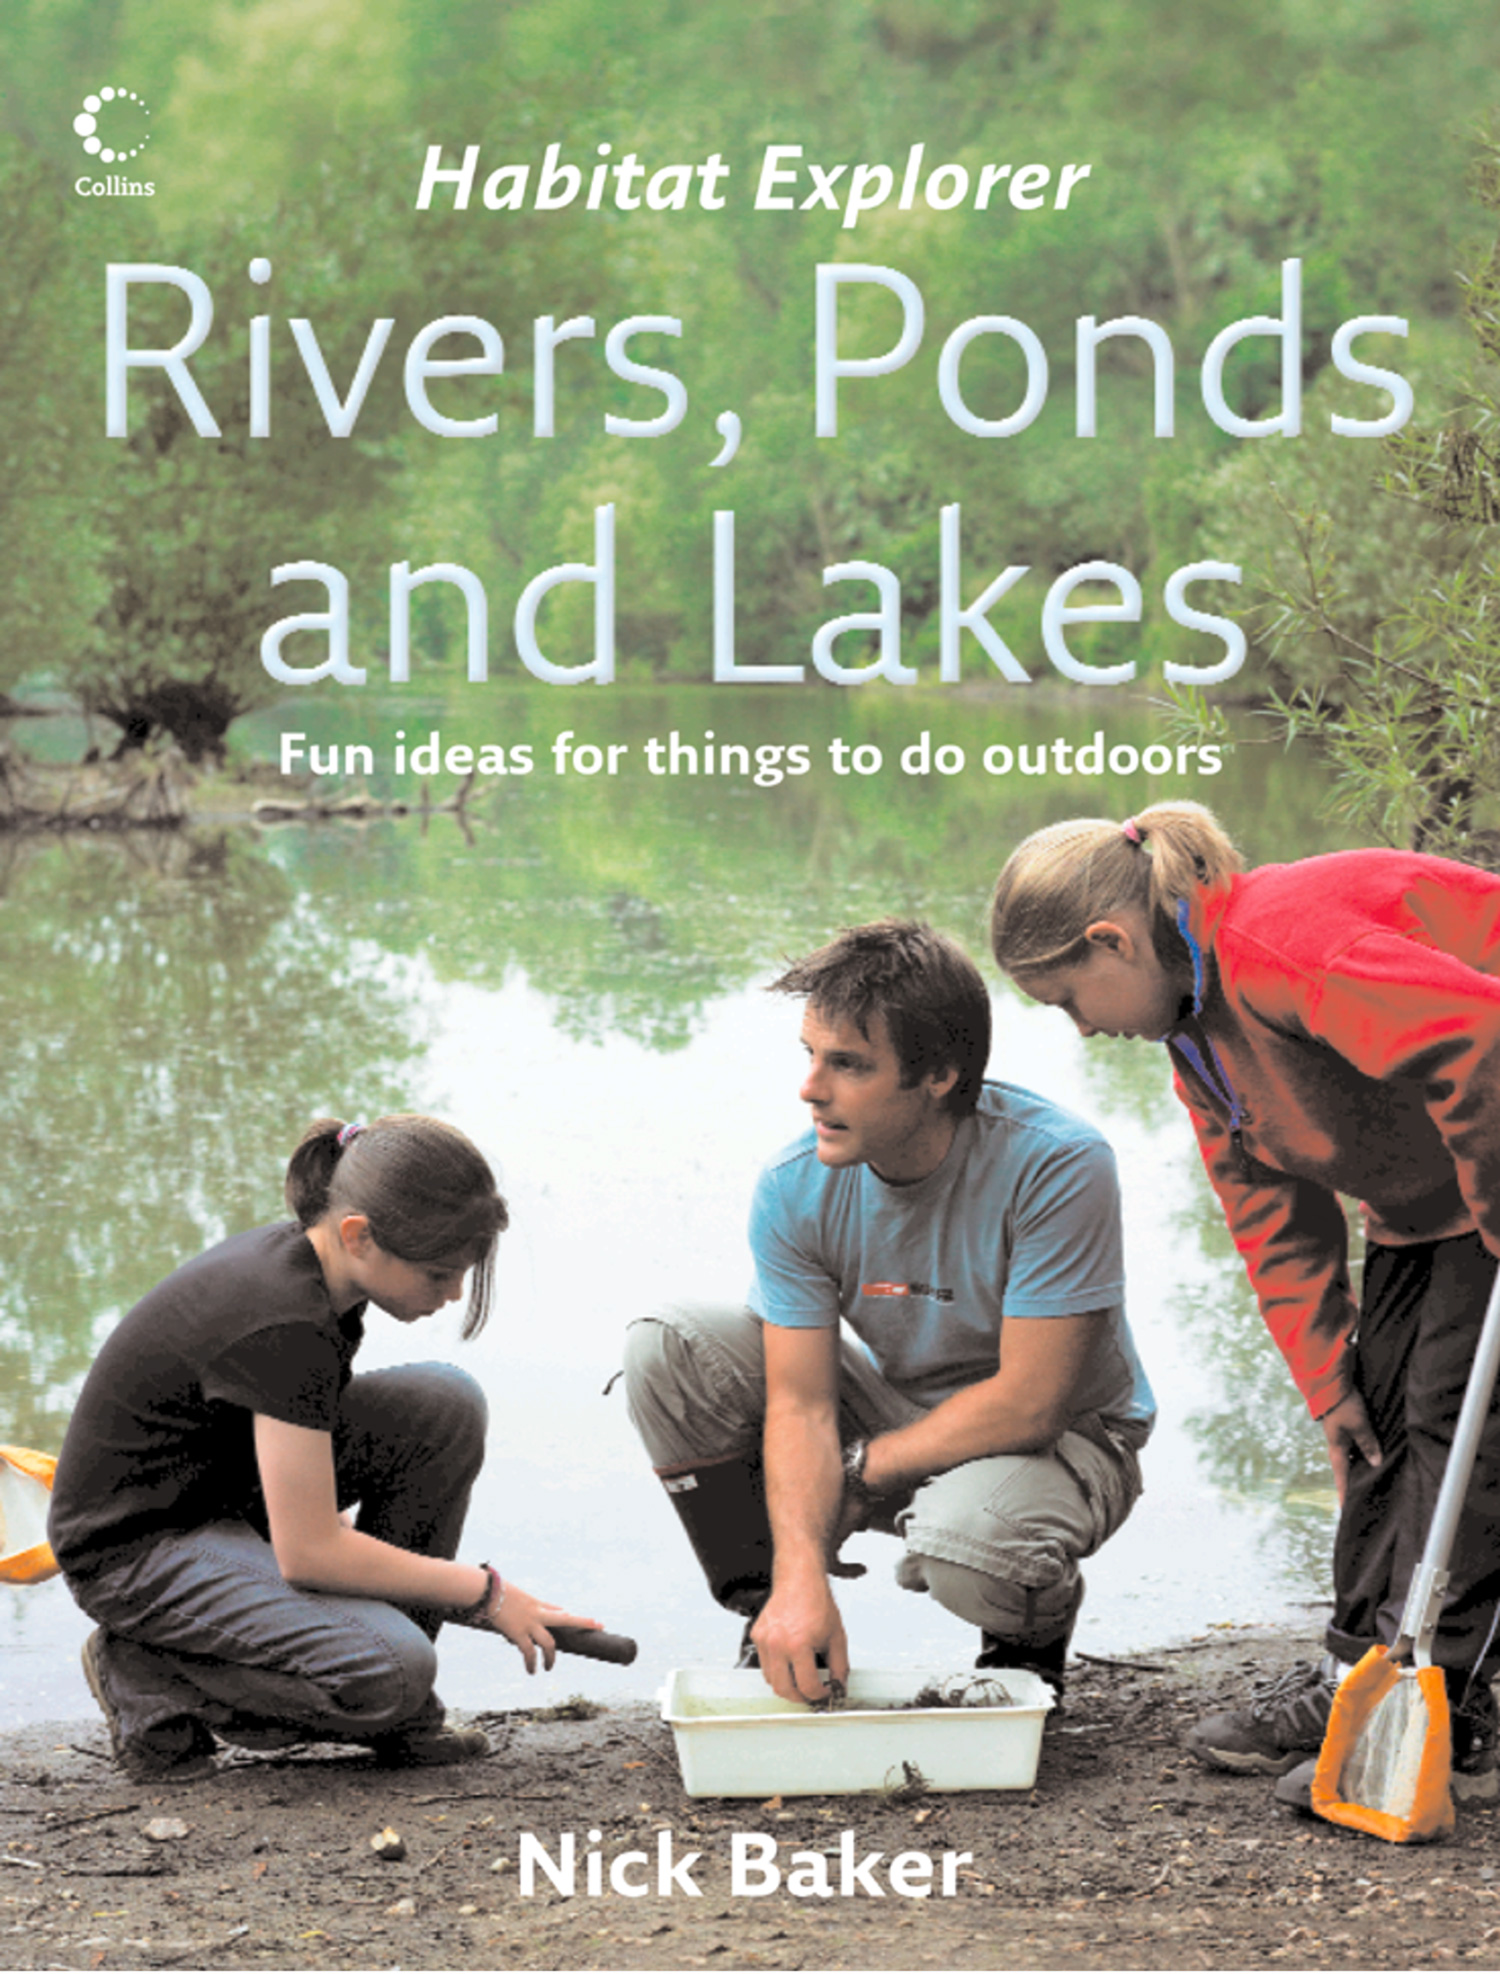 Книга реки и озера. Ник Бейкер. Nick Baker images.